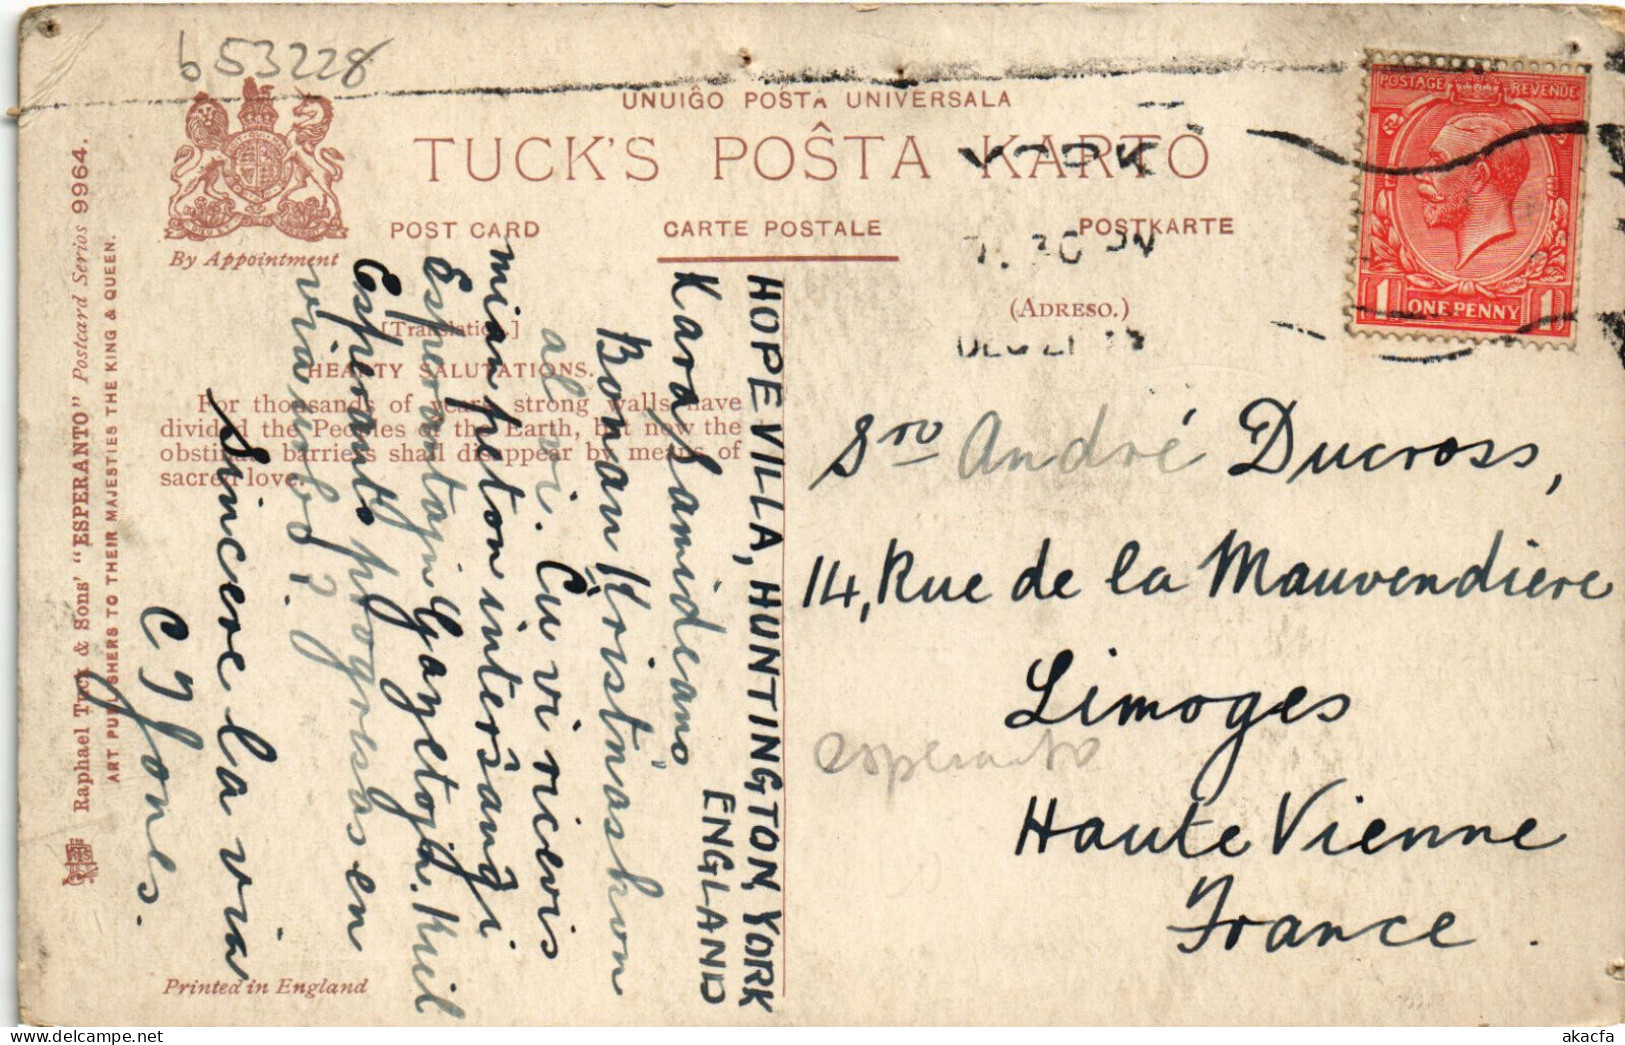 PC ESPERANTO, KORJAN SALUTOJN, Vintage Postcard (b53228) - Esperanto